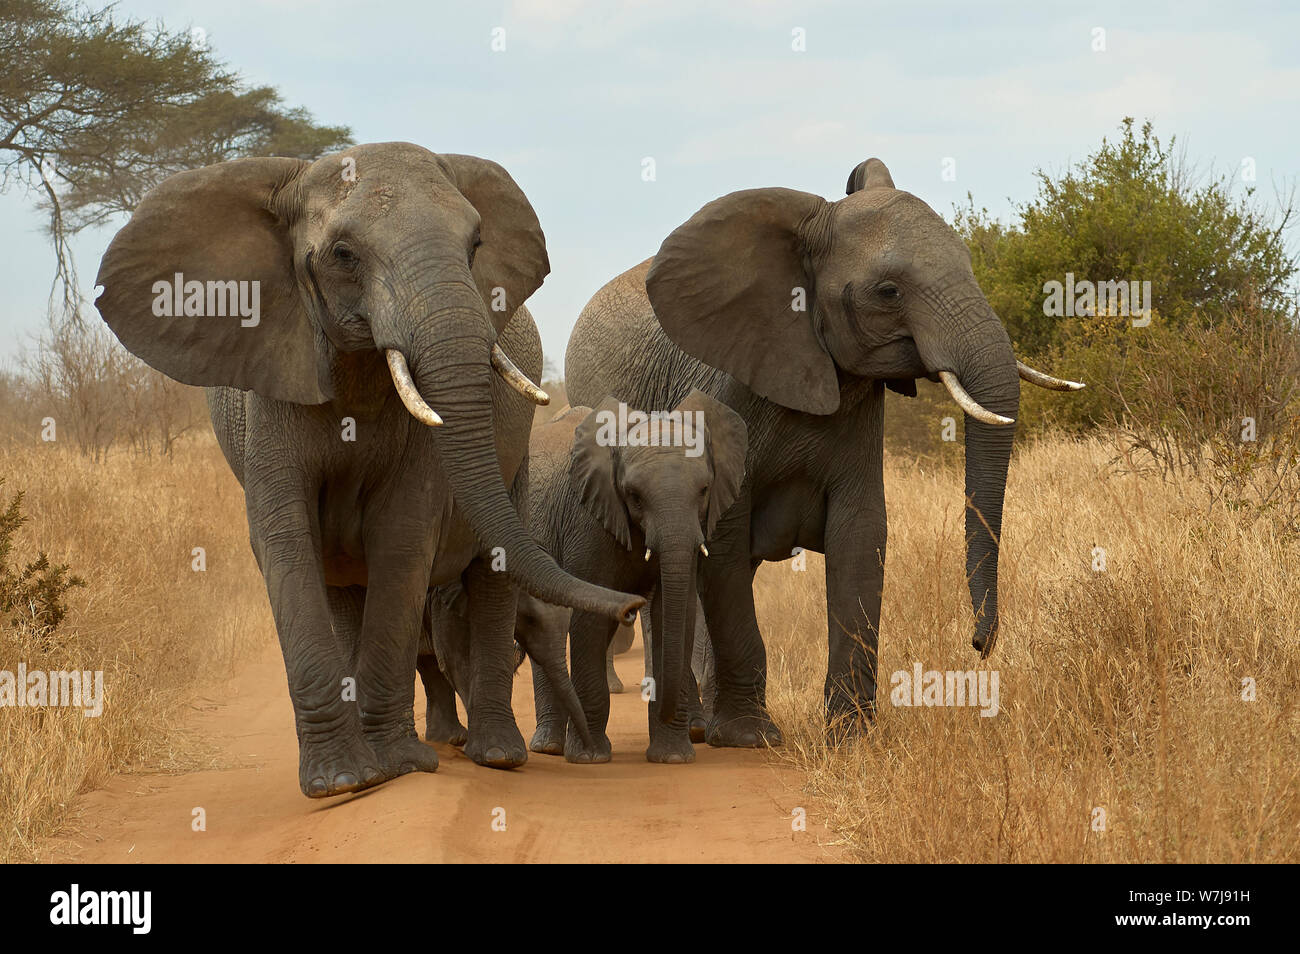 Un petit groupe d'éléphants exigeant leur "droit de passage" sur une route de terre africaine Banque D'Images